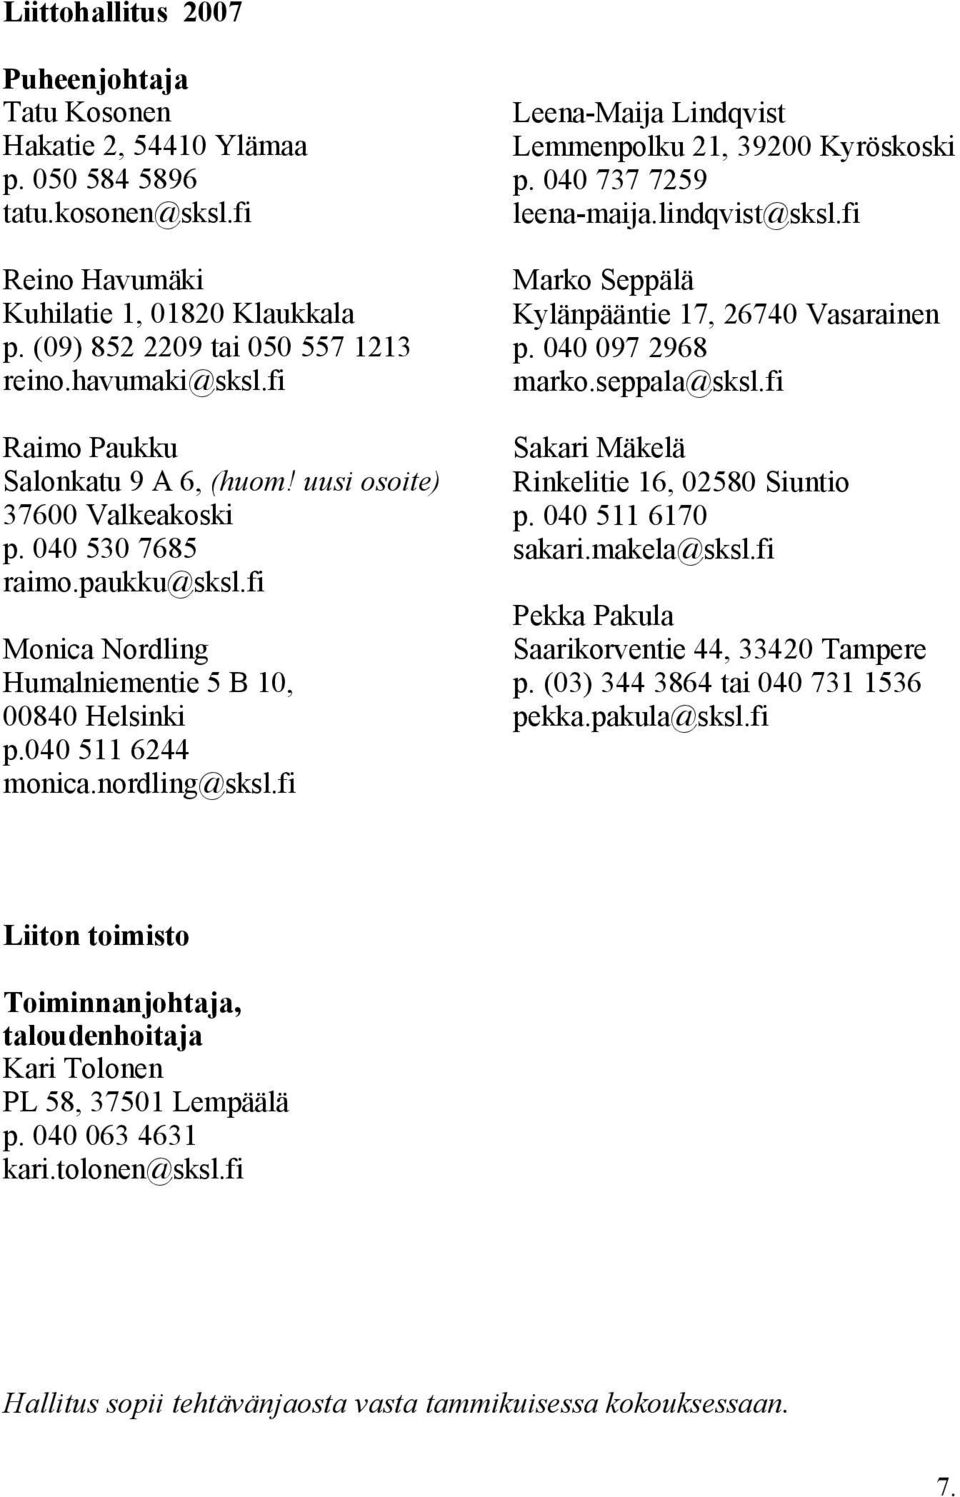 nordling@sksl.fi Leena-Maija Lindqvist Lemmenpolku 21, 39200 Kyröskoski p. 040 737 7259 leena-maija.lindqvist@sksl.fi Marko Seppälä Kylänpääntie 17, 26740 Vasarainen p. 040 097 2968 marko.